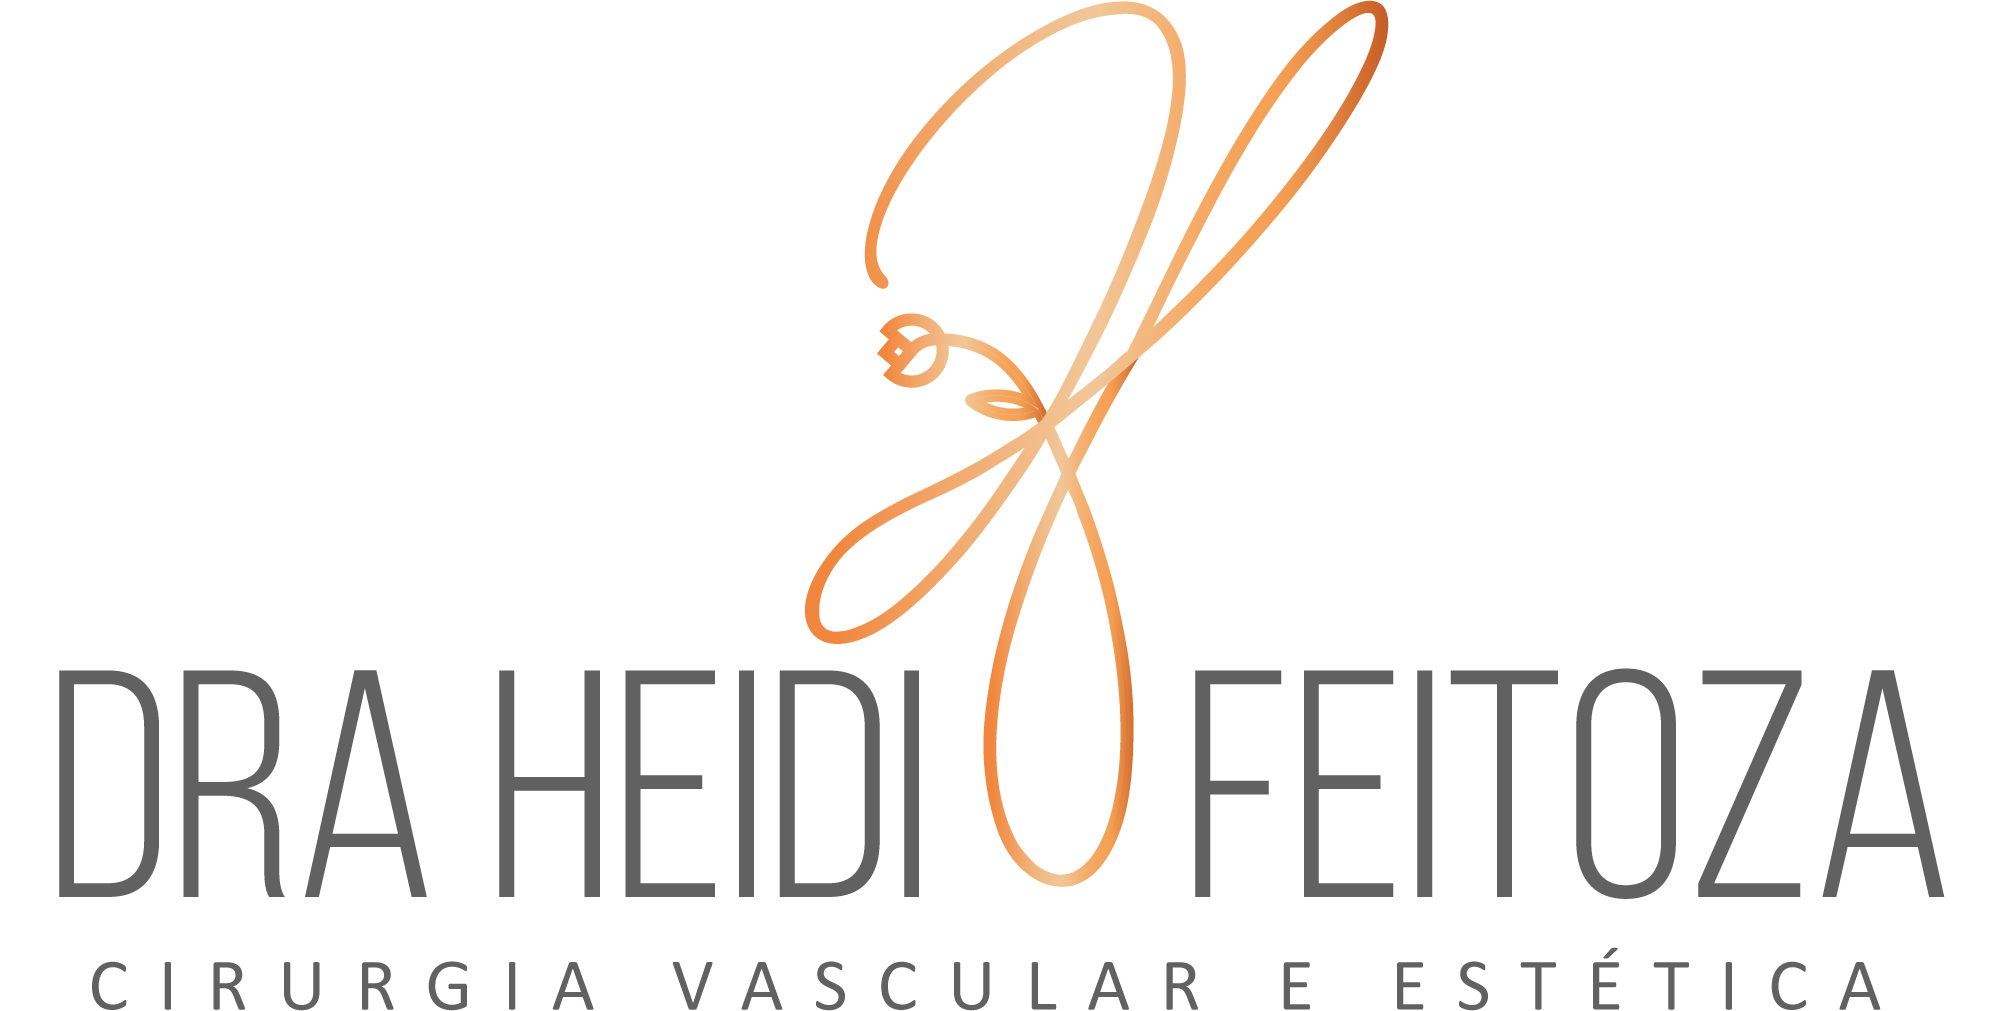 Dra Heidi Feitoza